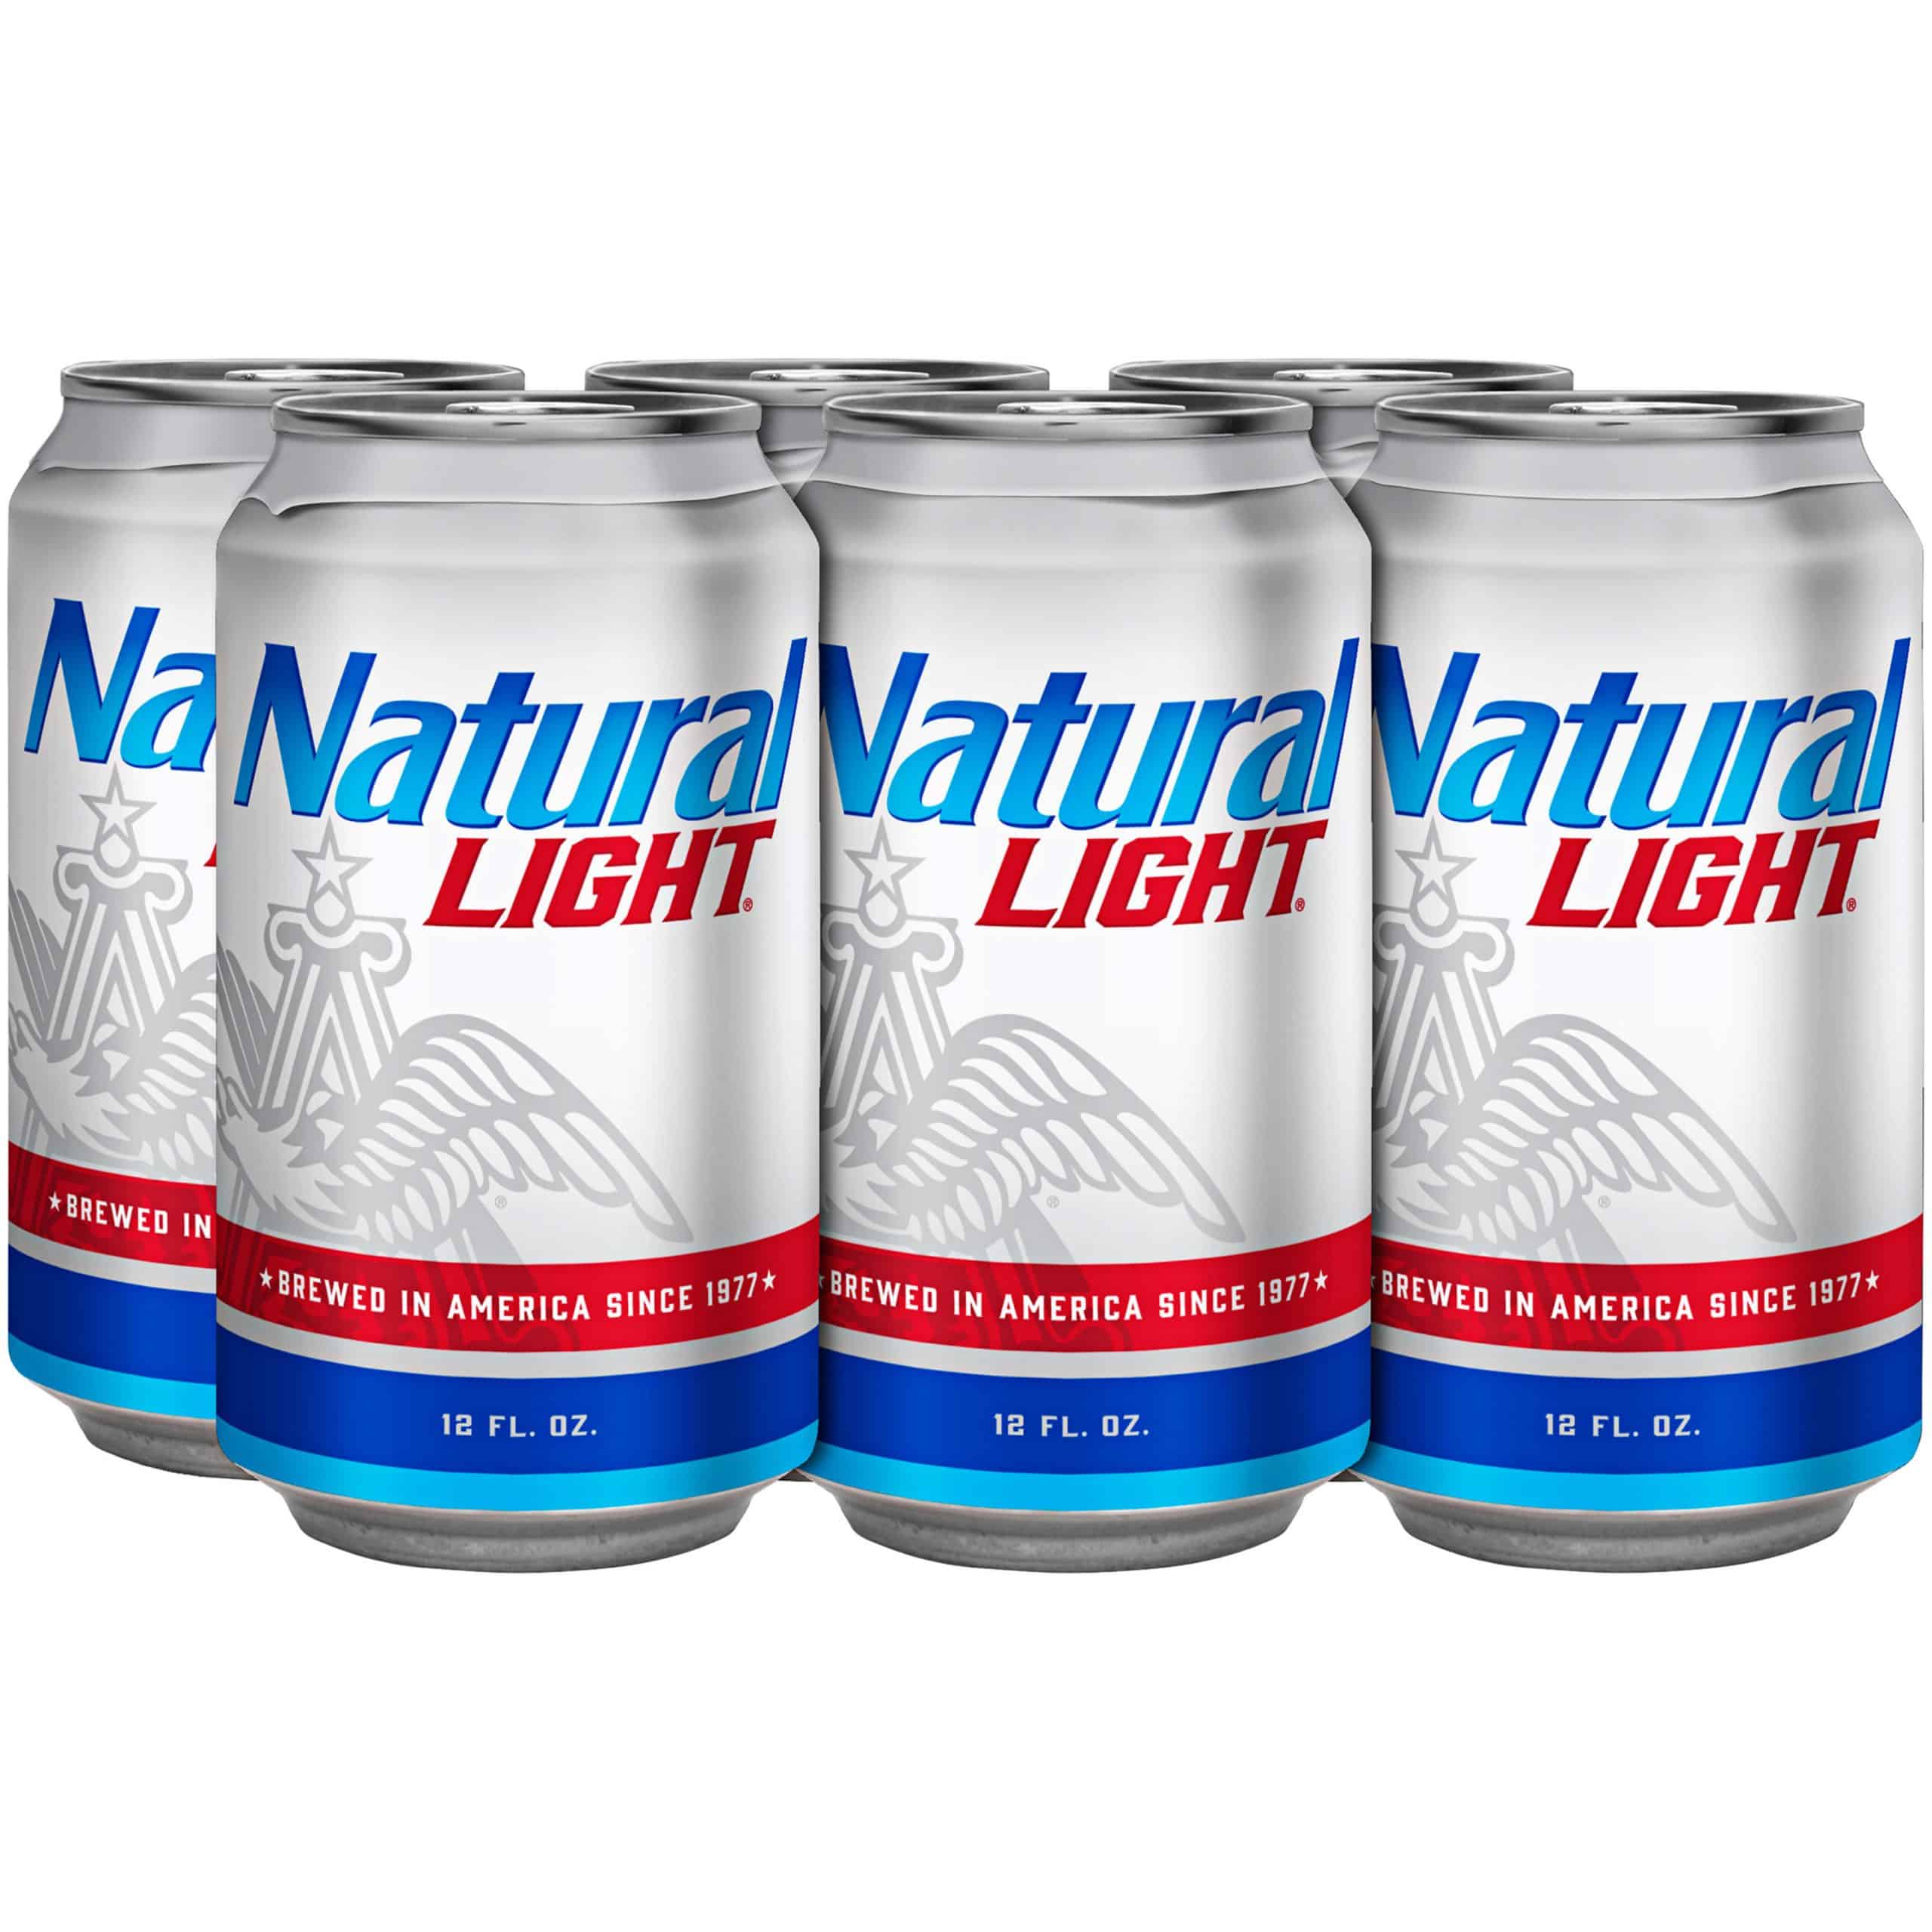 Natural Light Beer, 6 Pack 12 fl. oz. Cans, 4.2% ABV